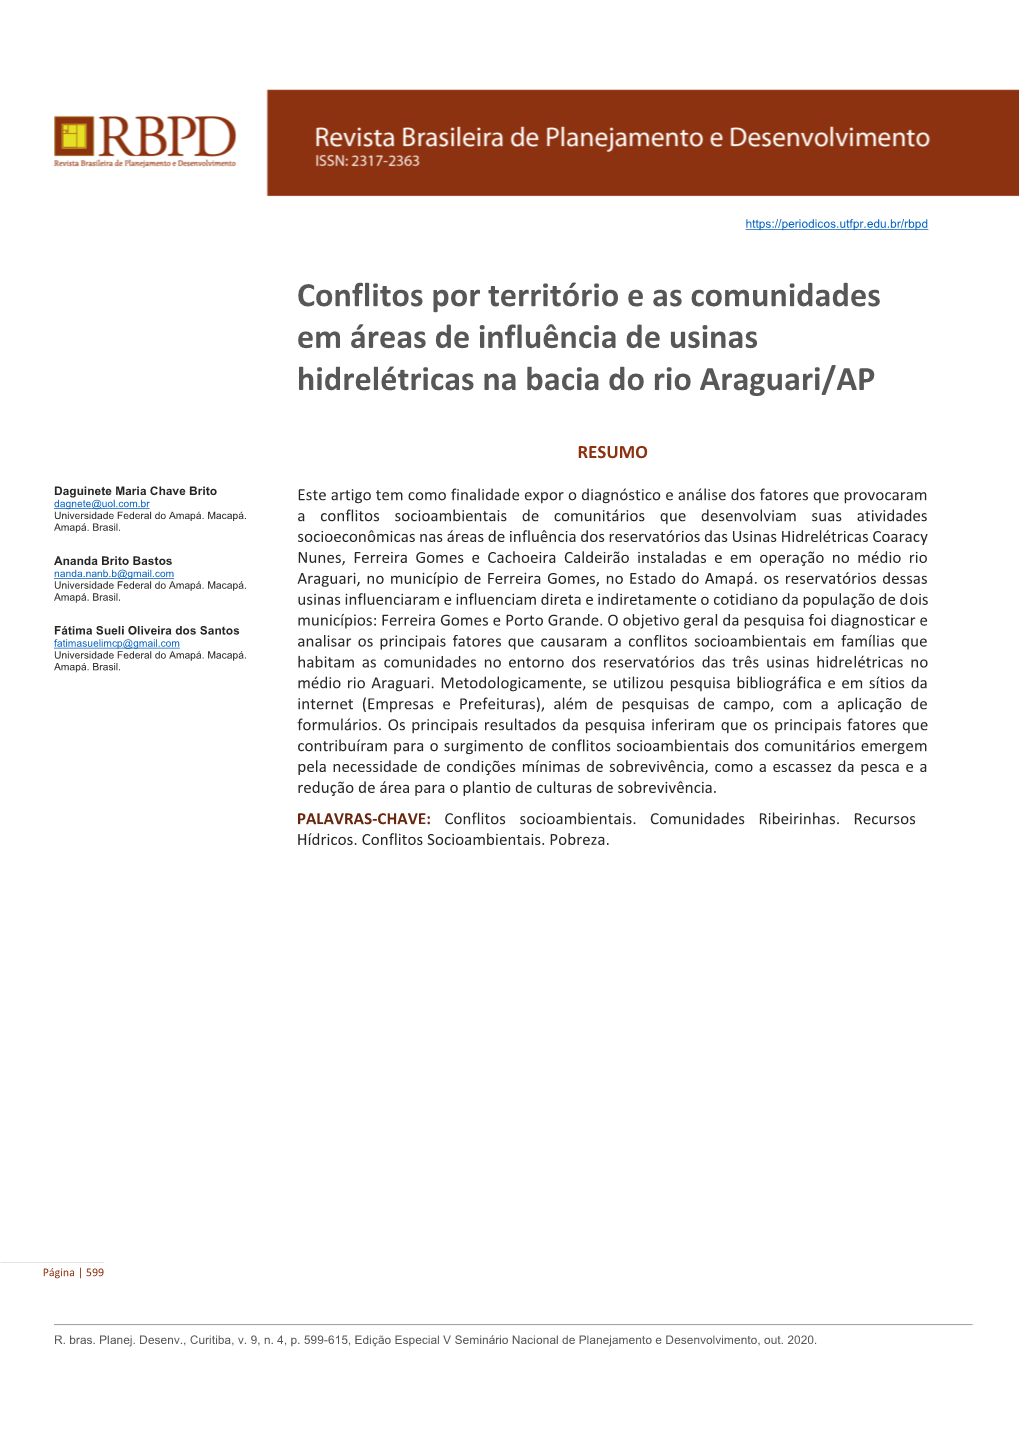 Conflitos Por Território E As Comunidades Em Áreas De Influência De Usinas Hidrelétricas Na Bacia Do Rio Araguari/AP